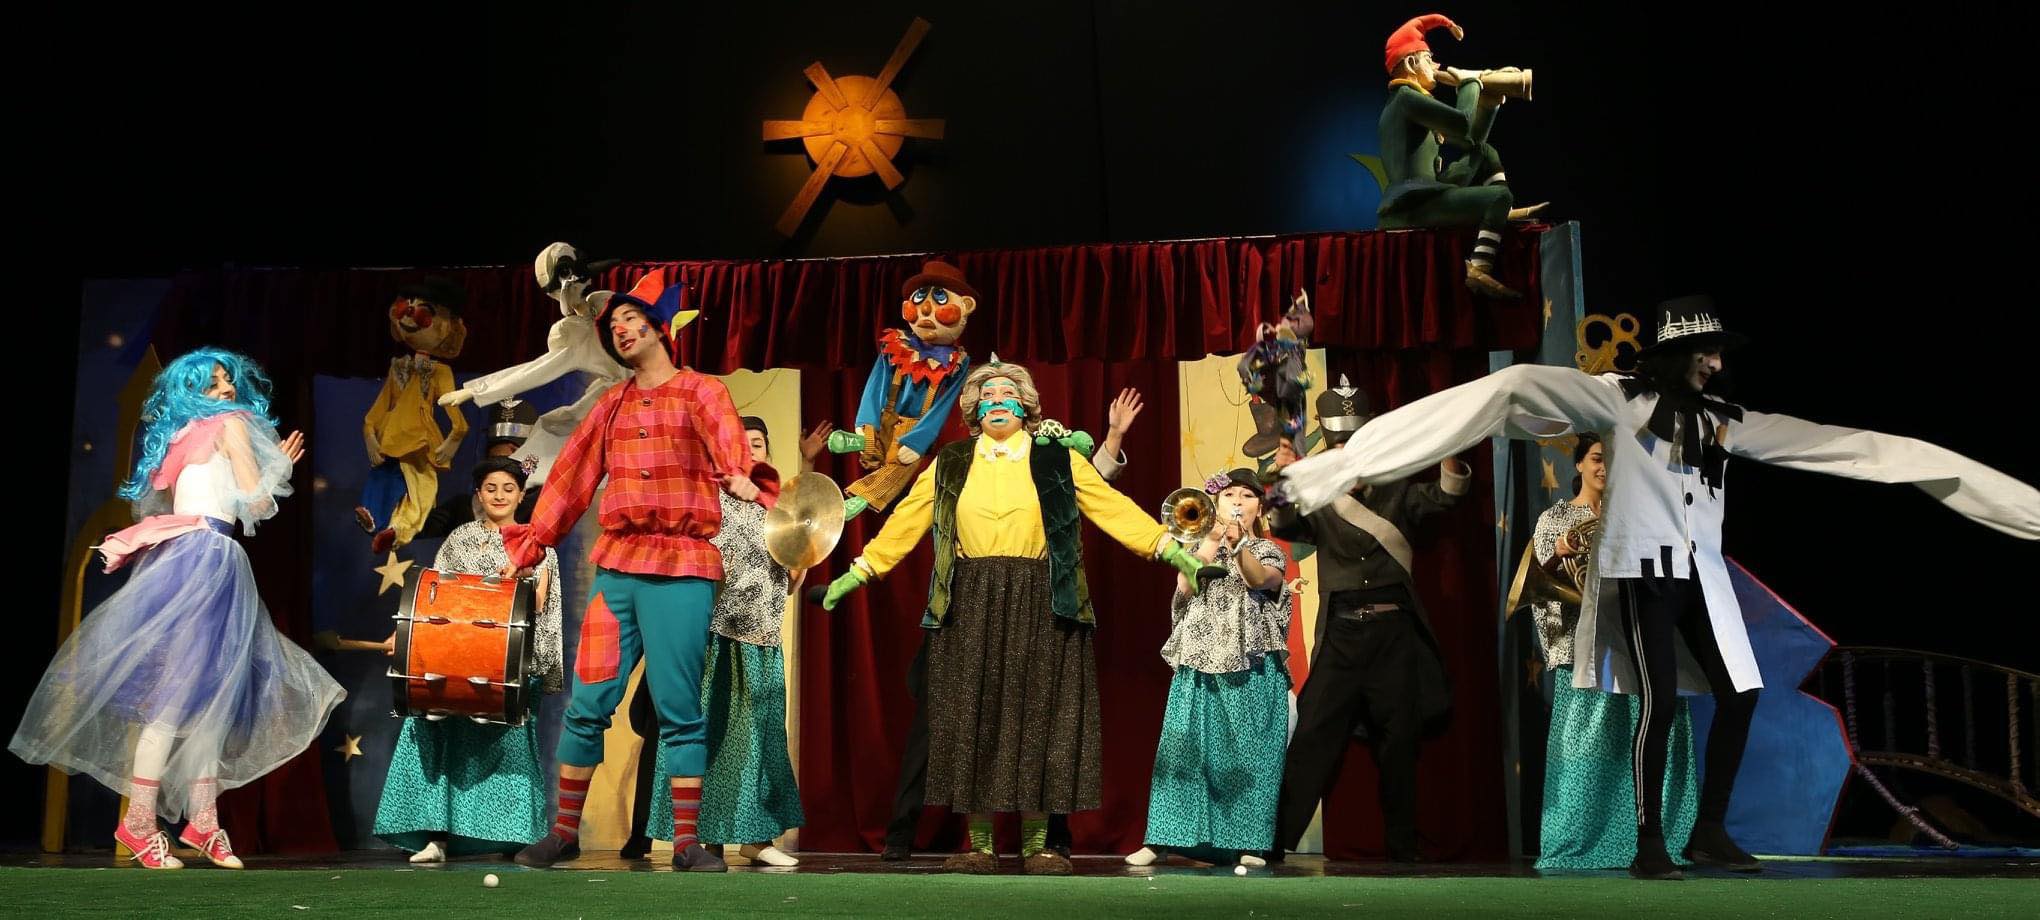 Գյումրու Դրամատիկականը  թարմացնում է մանկական խաղացանկը. Գյումրու Վարդան Աճեմյանի անվան պետական դրամատիկական թատրոնի մենեջեր (լուսանկարներ)